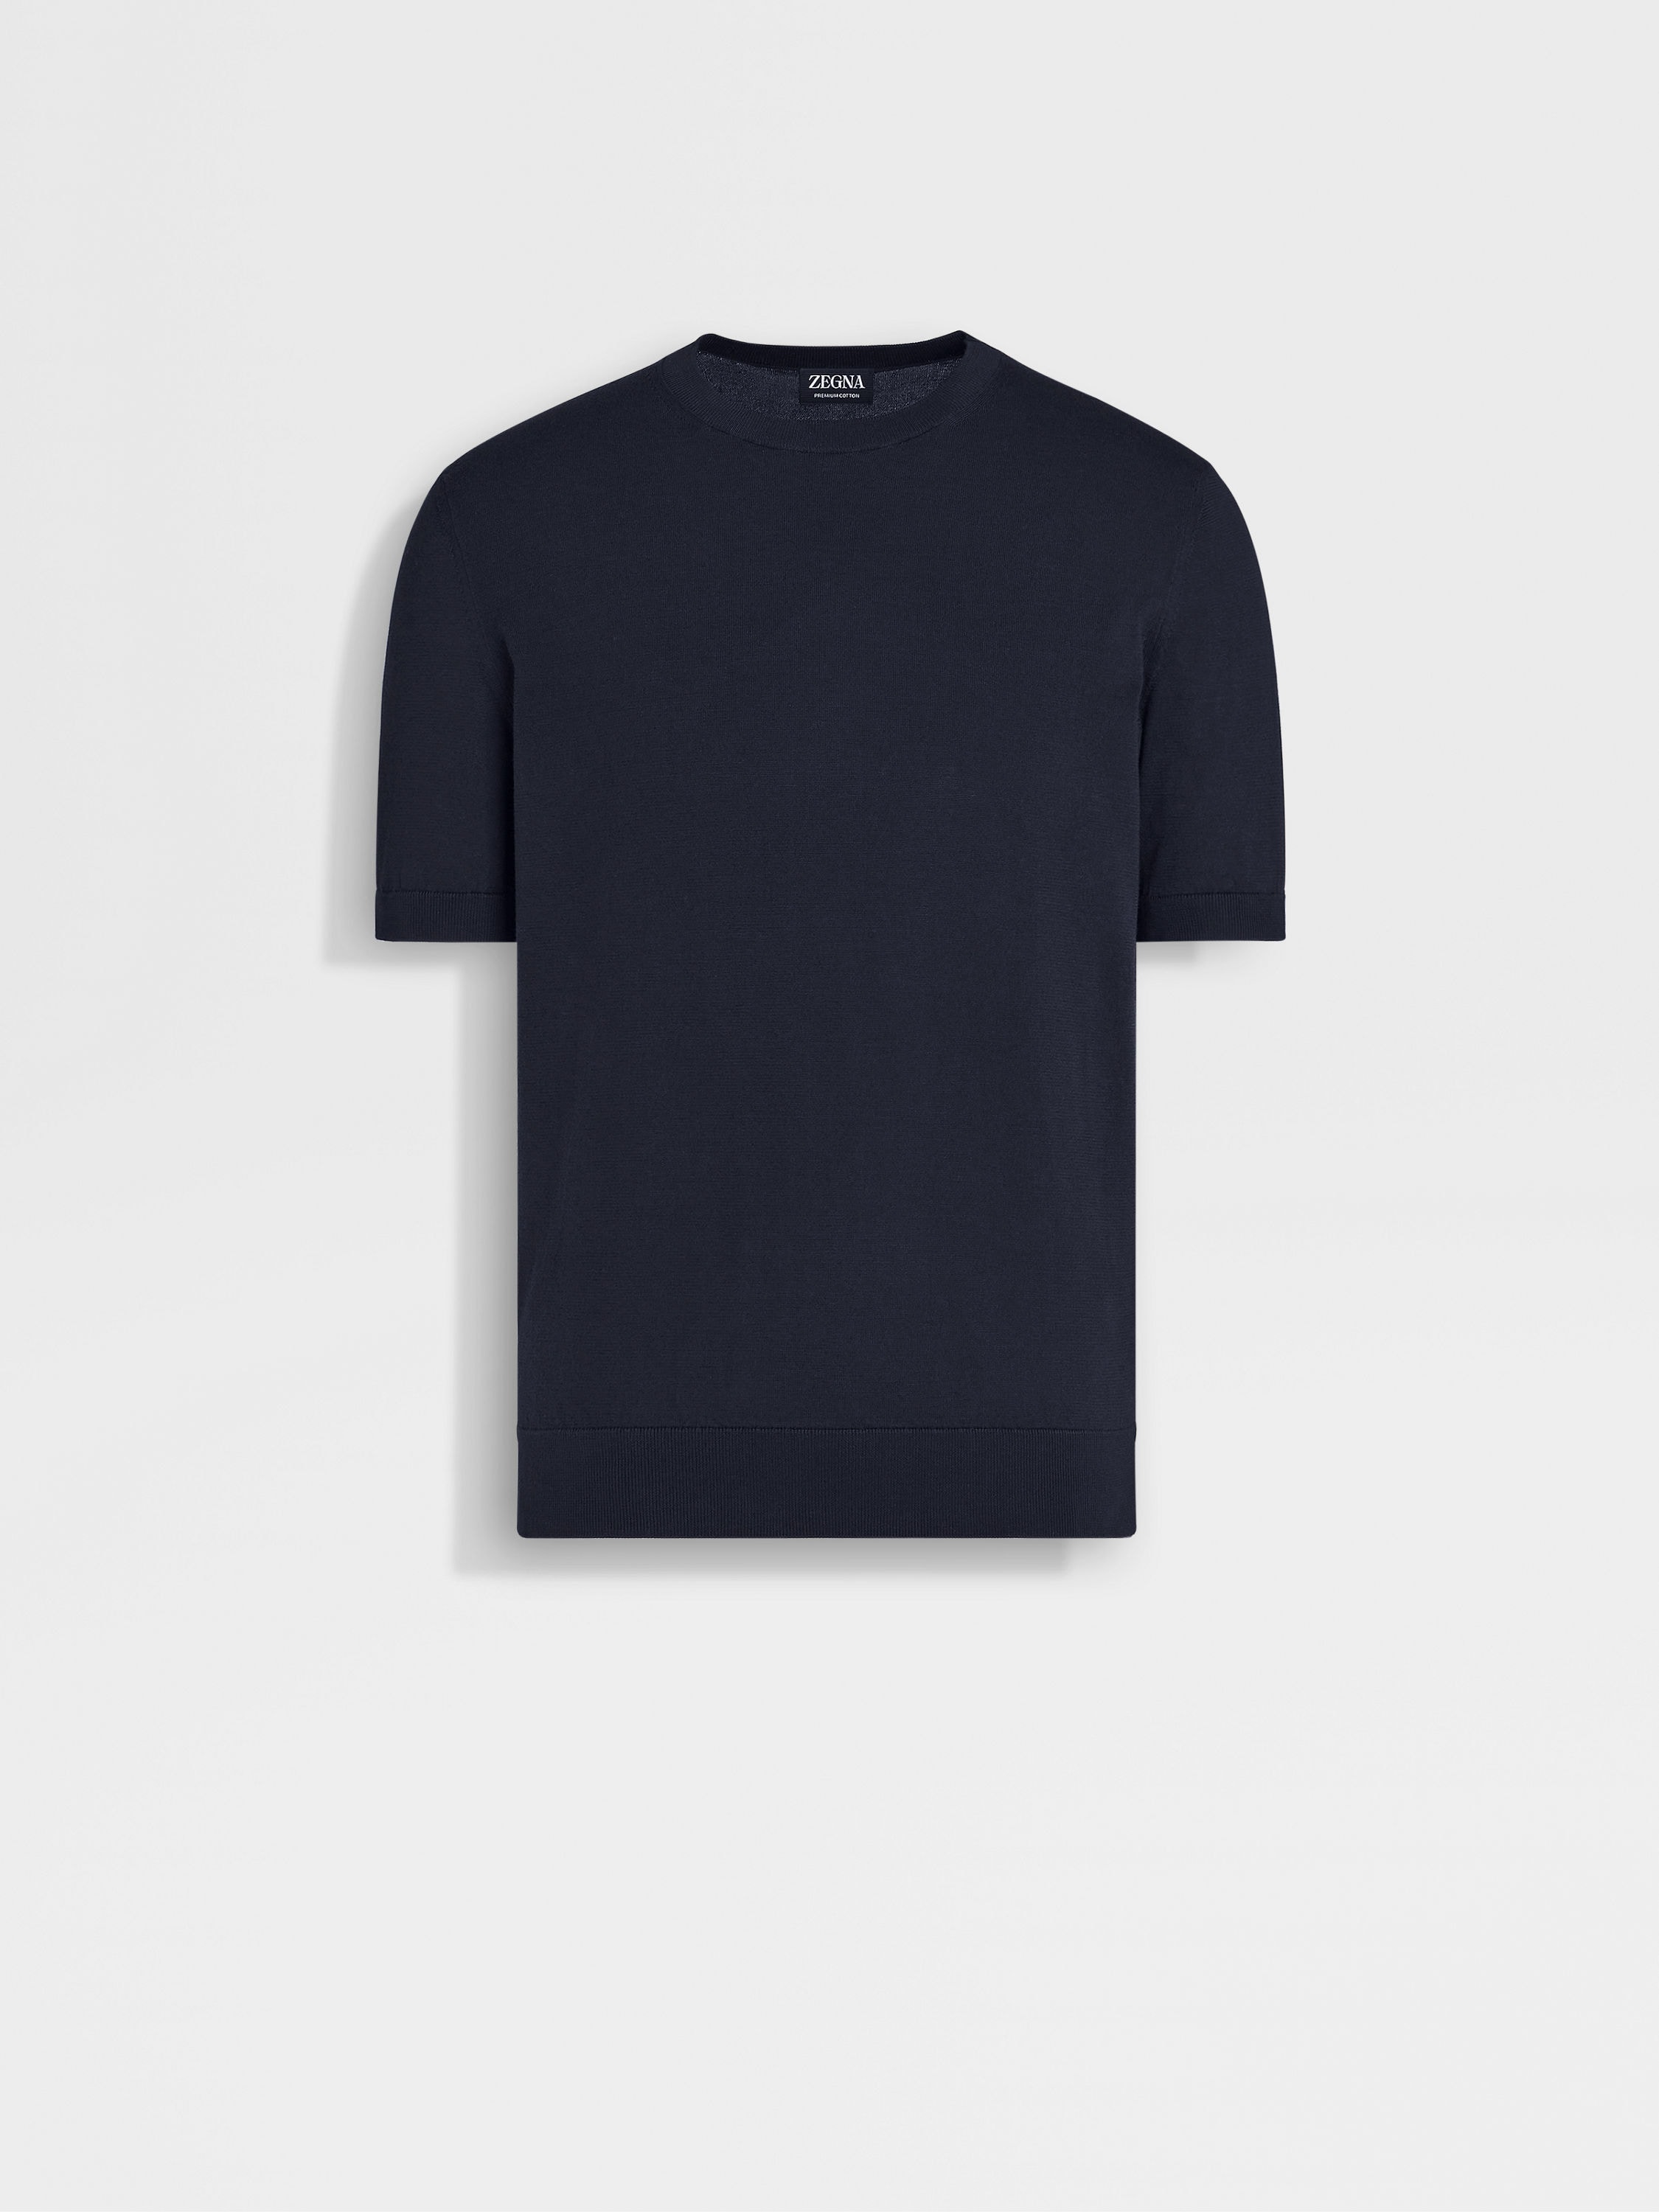 海军蓝 Premium 棉质针织圆领 T 恤